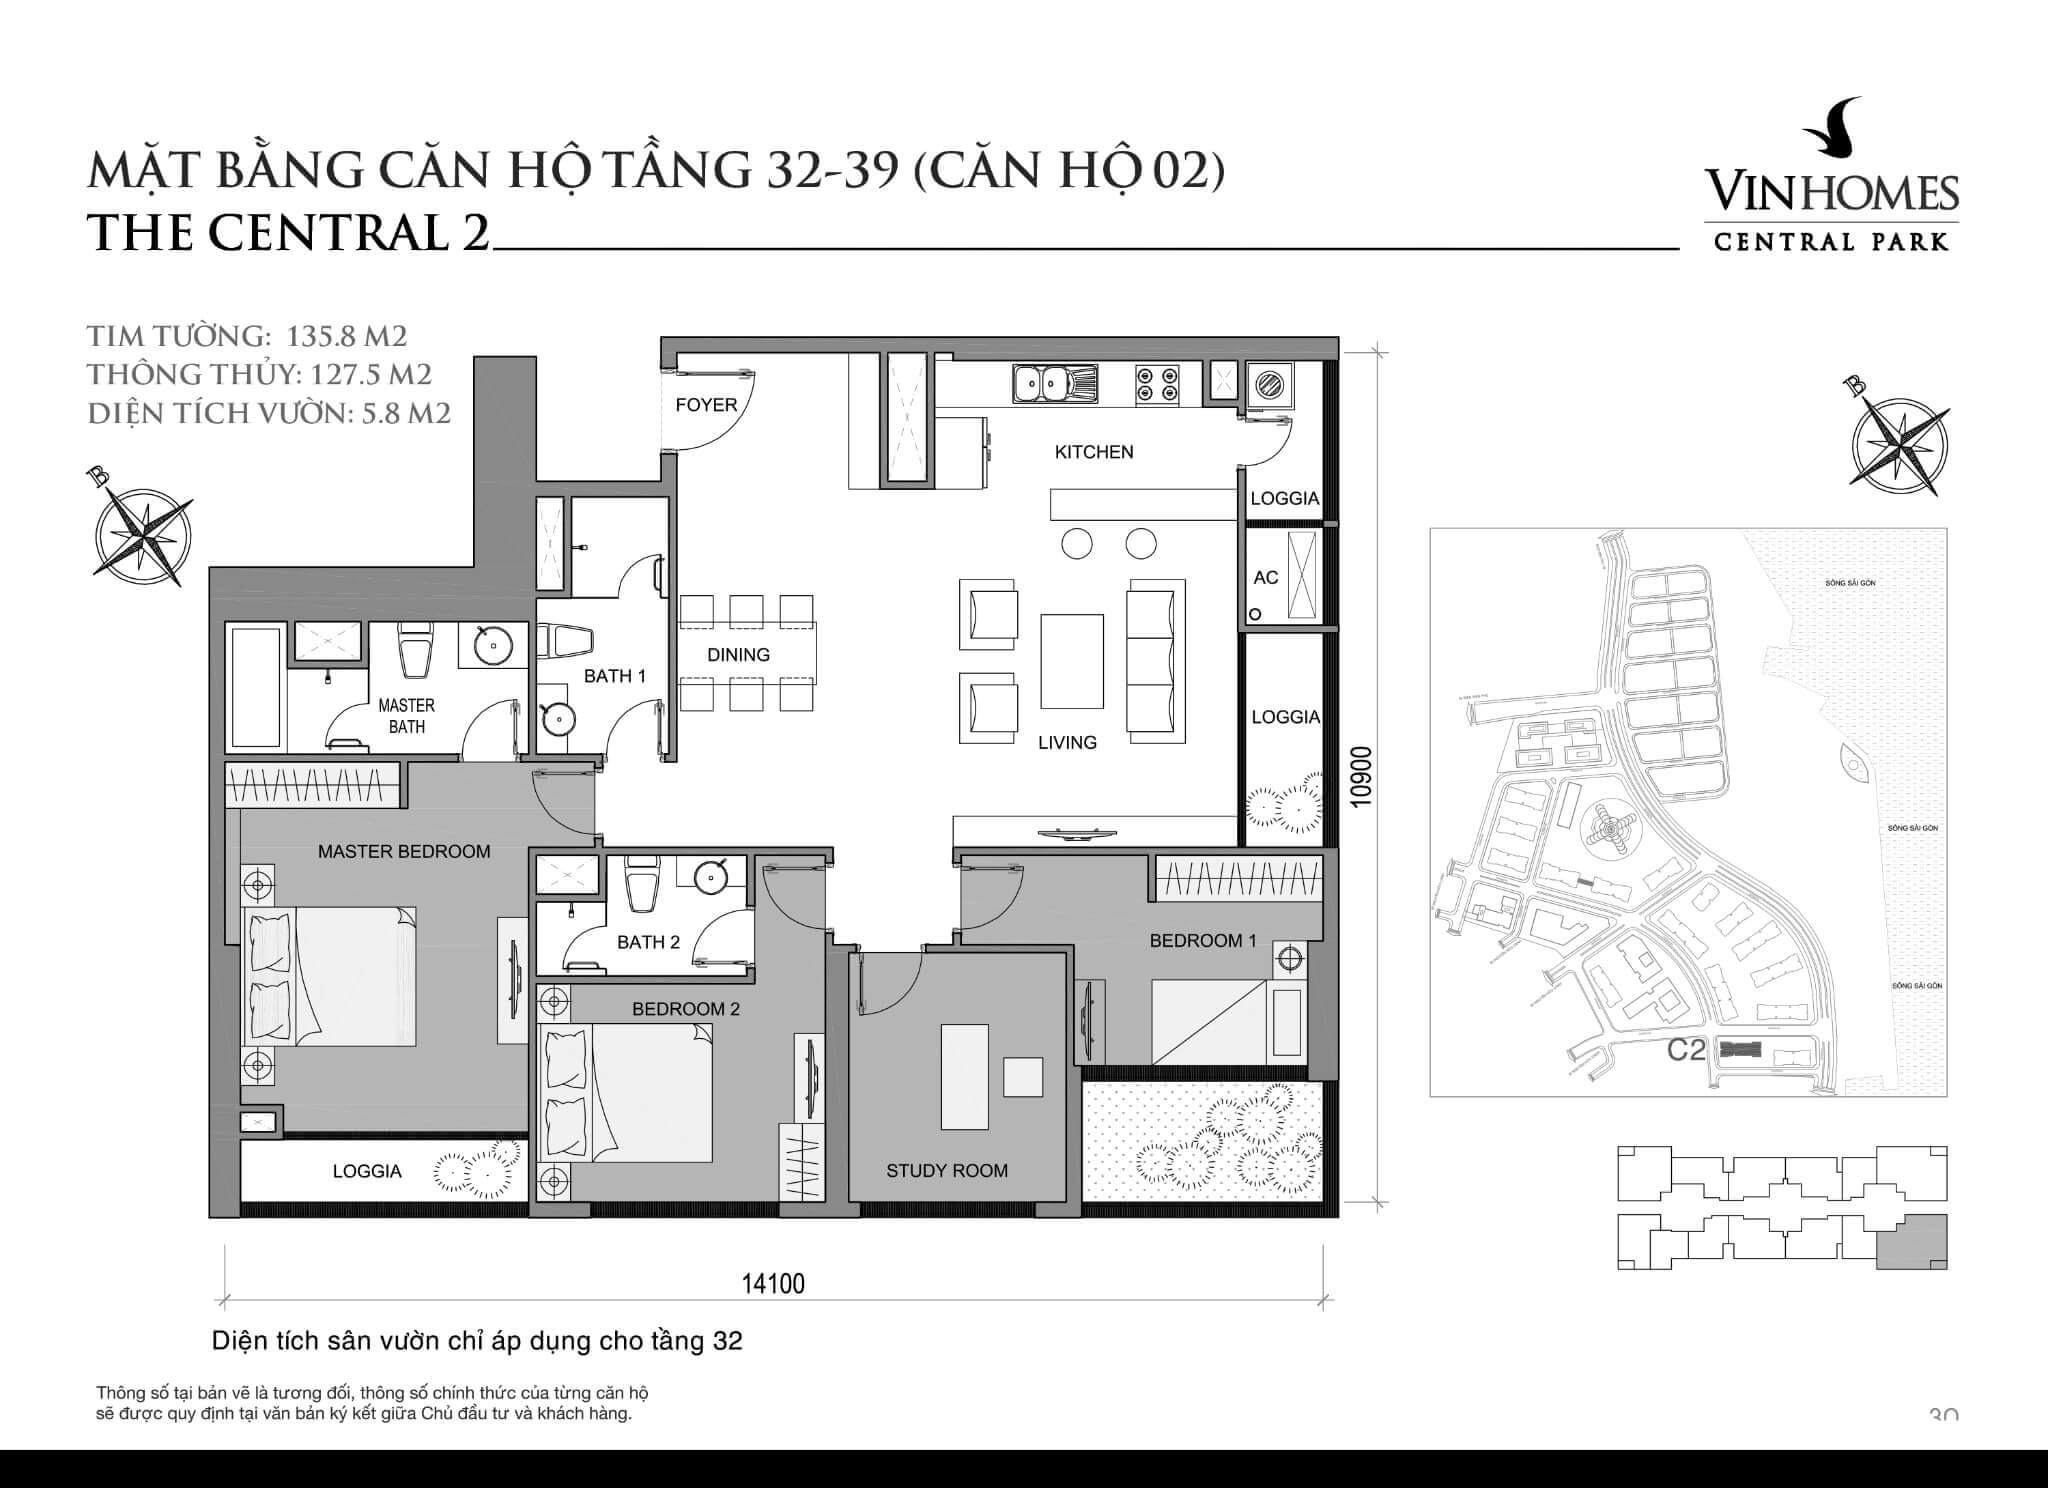 layout căn hộ số 2 tầng 32-39 Central 2